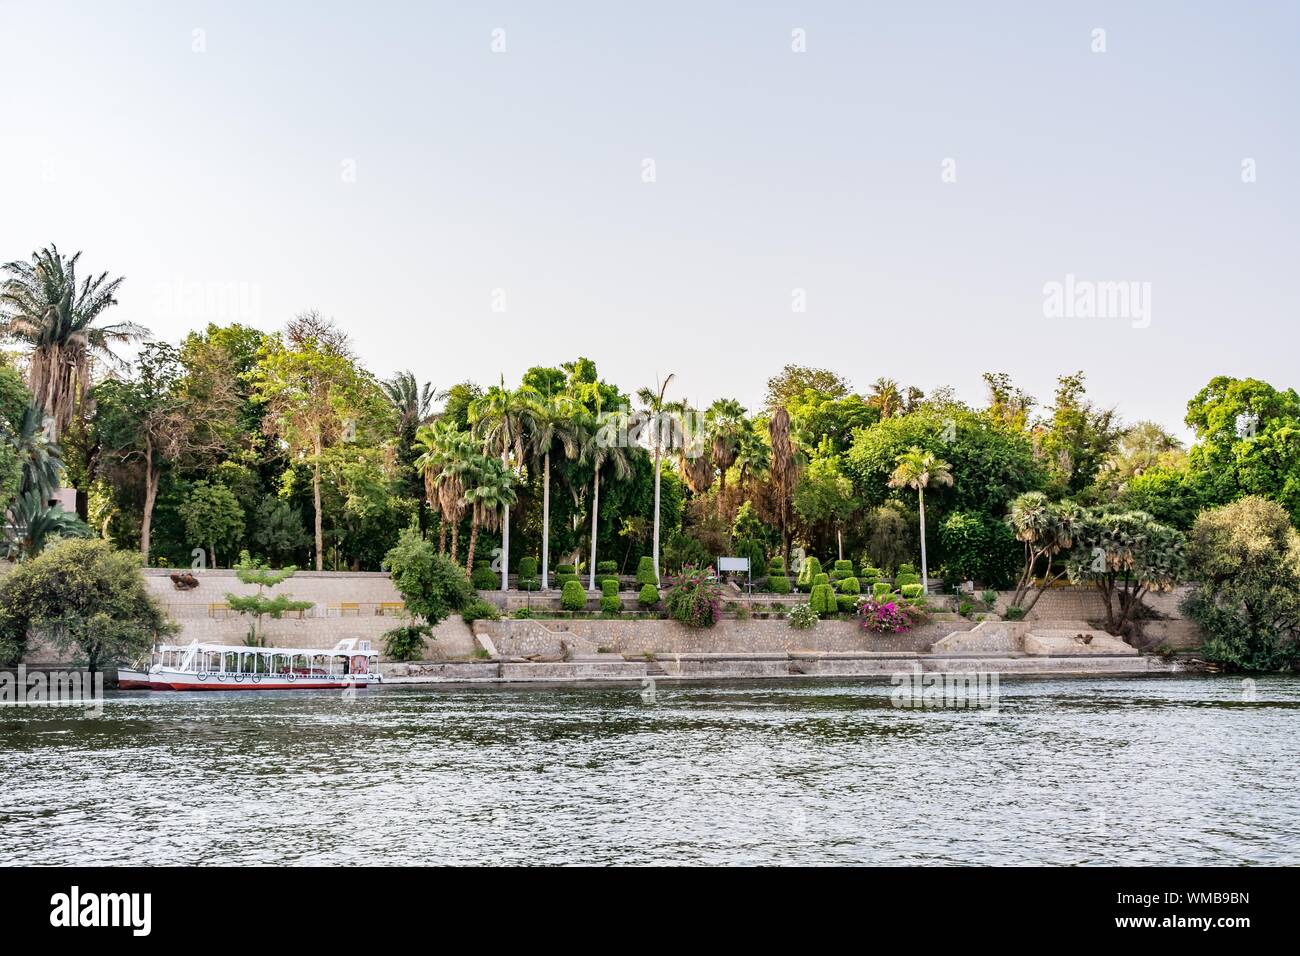 Botanical island (Lord Kitchener's island) on Nile river, Egypt Stock Photo